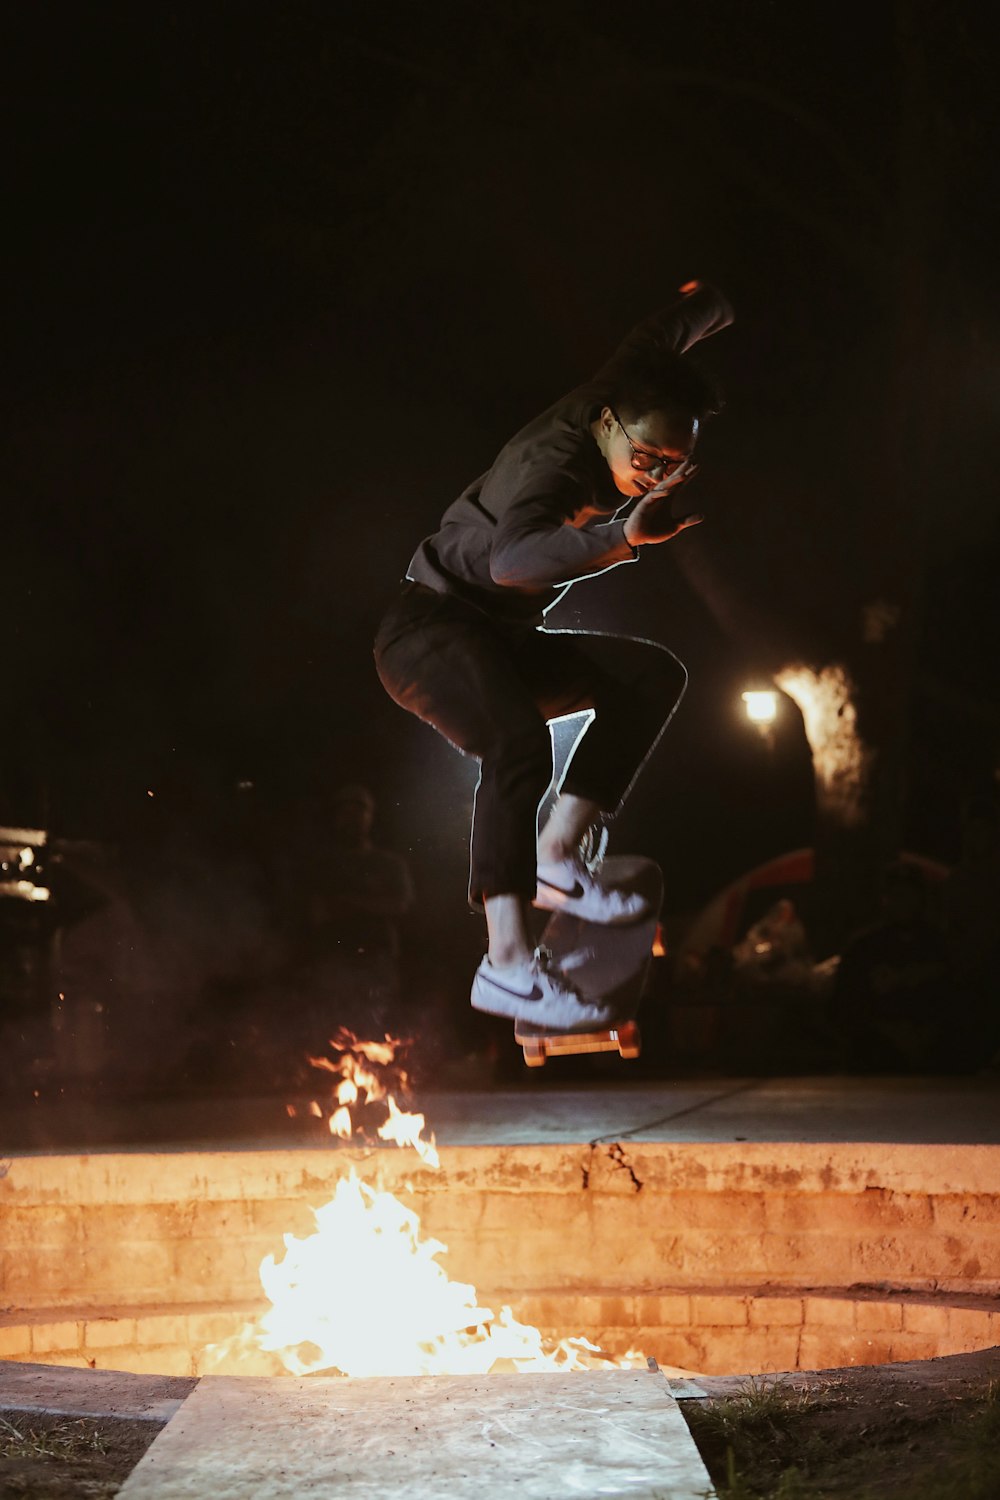 火のそばでスケートボードをする黒いジャケットを着た男